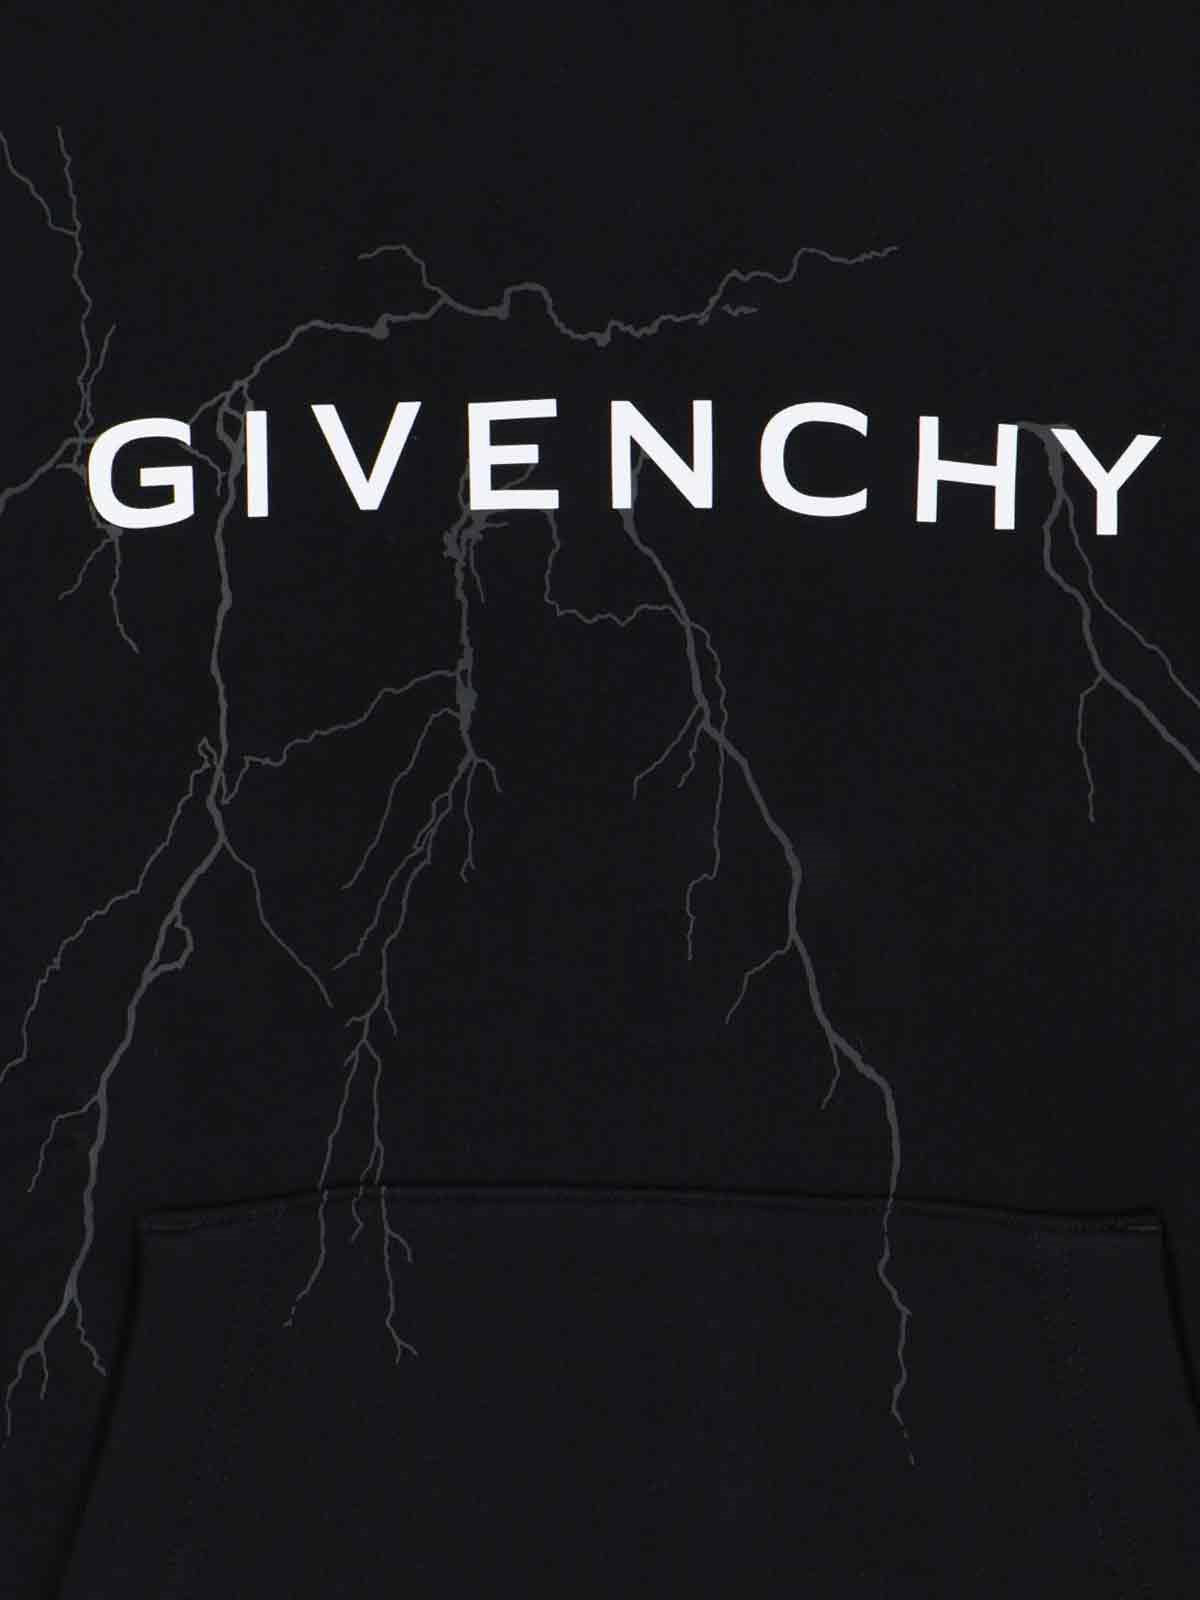 Givenchy Felpa cappuccio logo-felpe con cappuccio-Givenchy-Felpa cappuccio logo Givenchy, in cotone nero, coulisse, stampa logo a contrato fronte, dettaglio stampa fulmini fronte, una maxi tasca frontale, orlo dritto.-Dresso